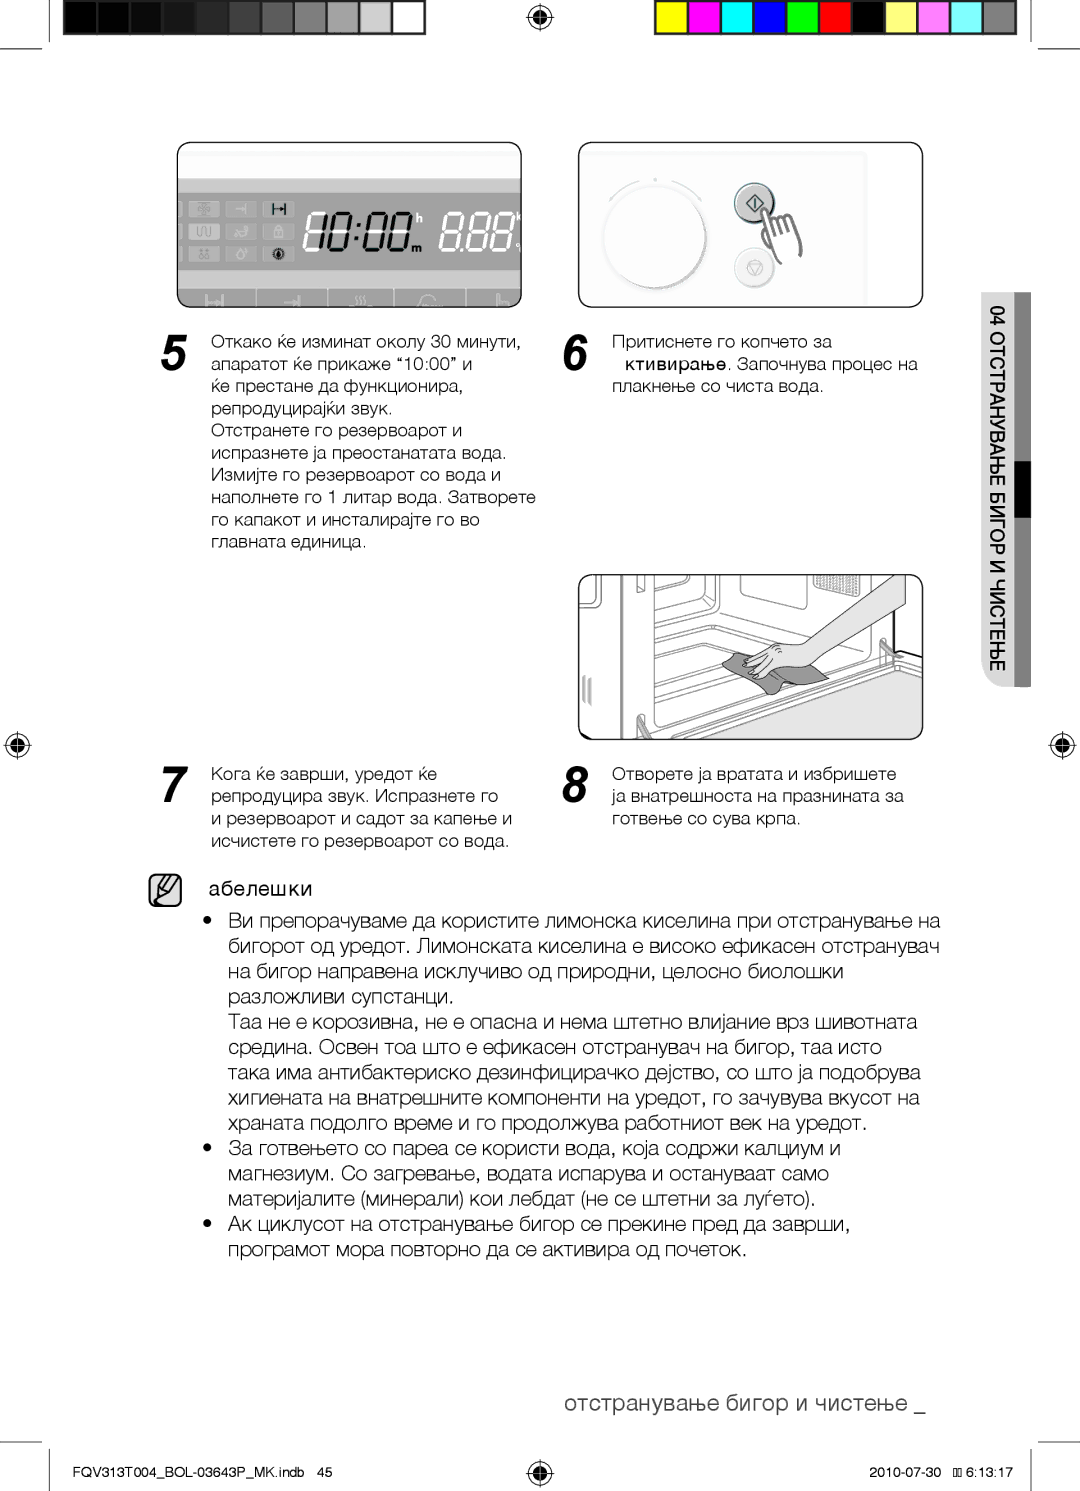 Samsung FQV313T004/BOL manual Отстранување бигор и чистење 